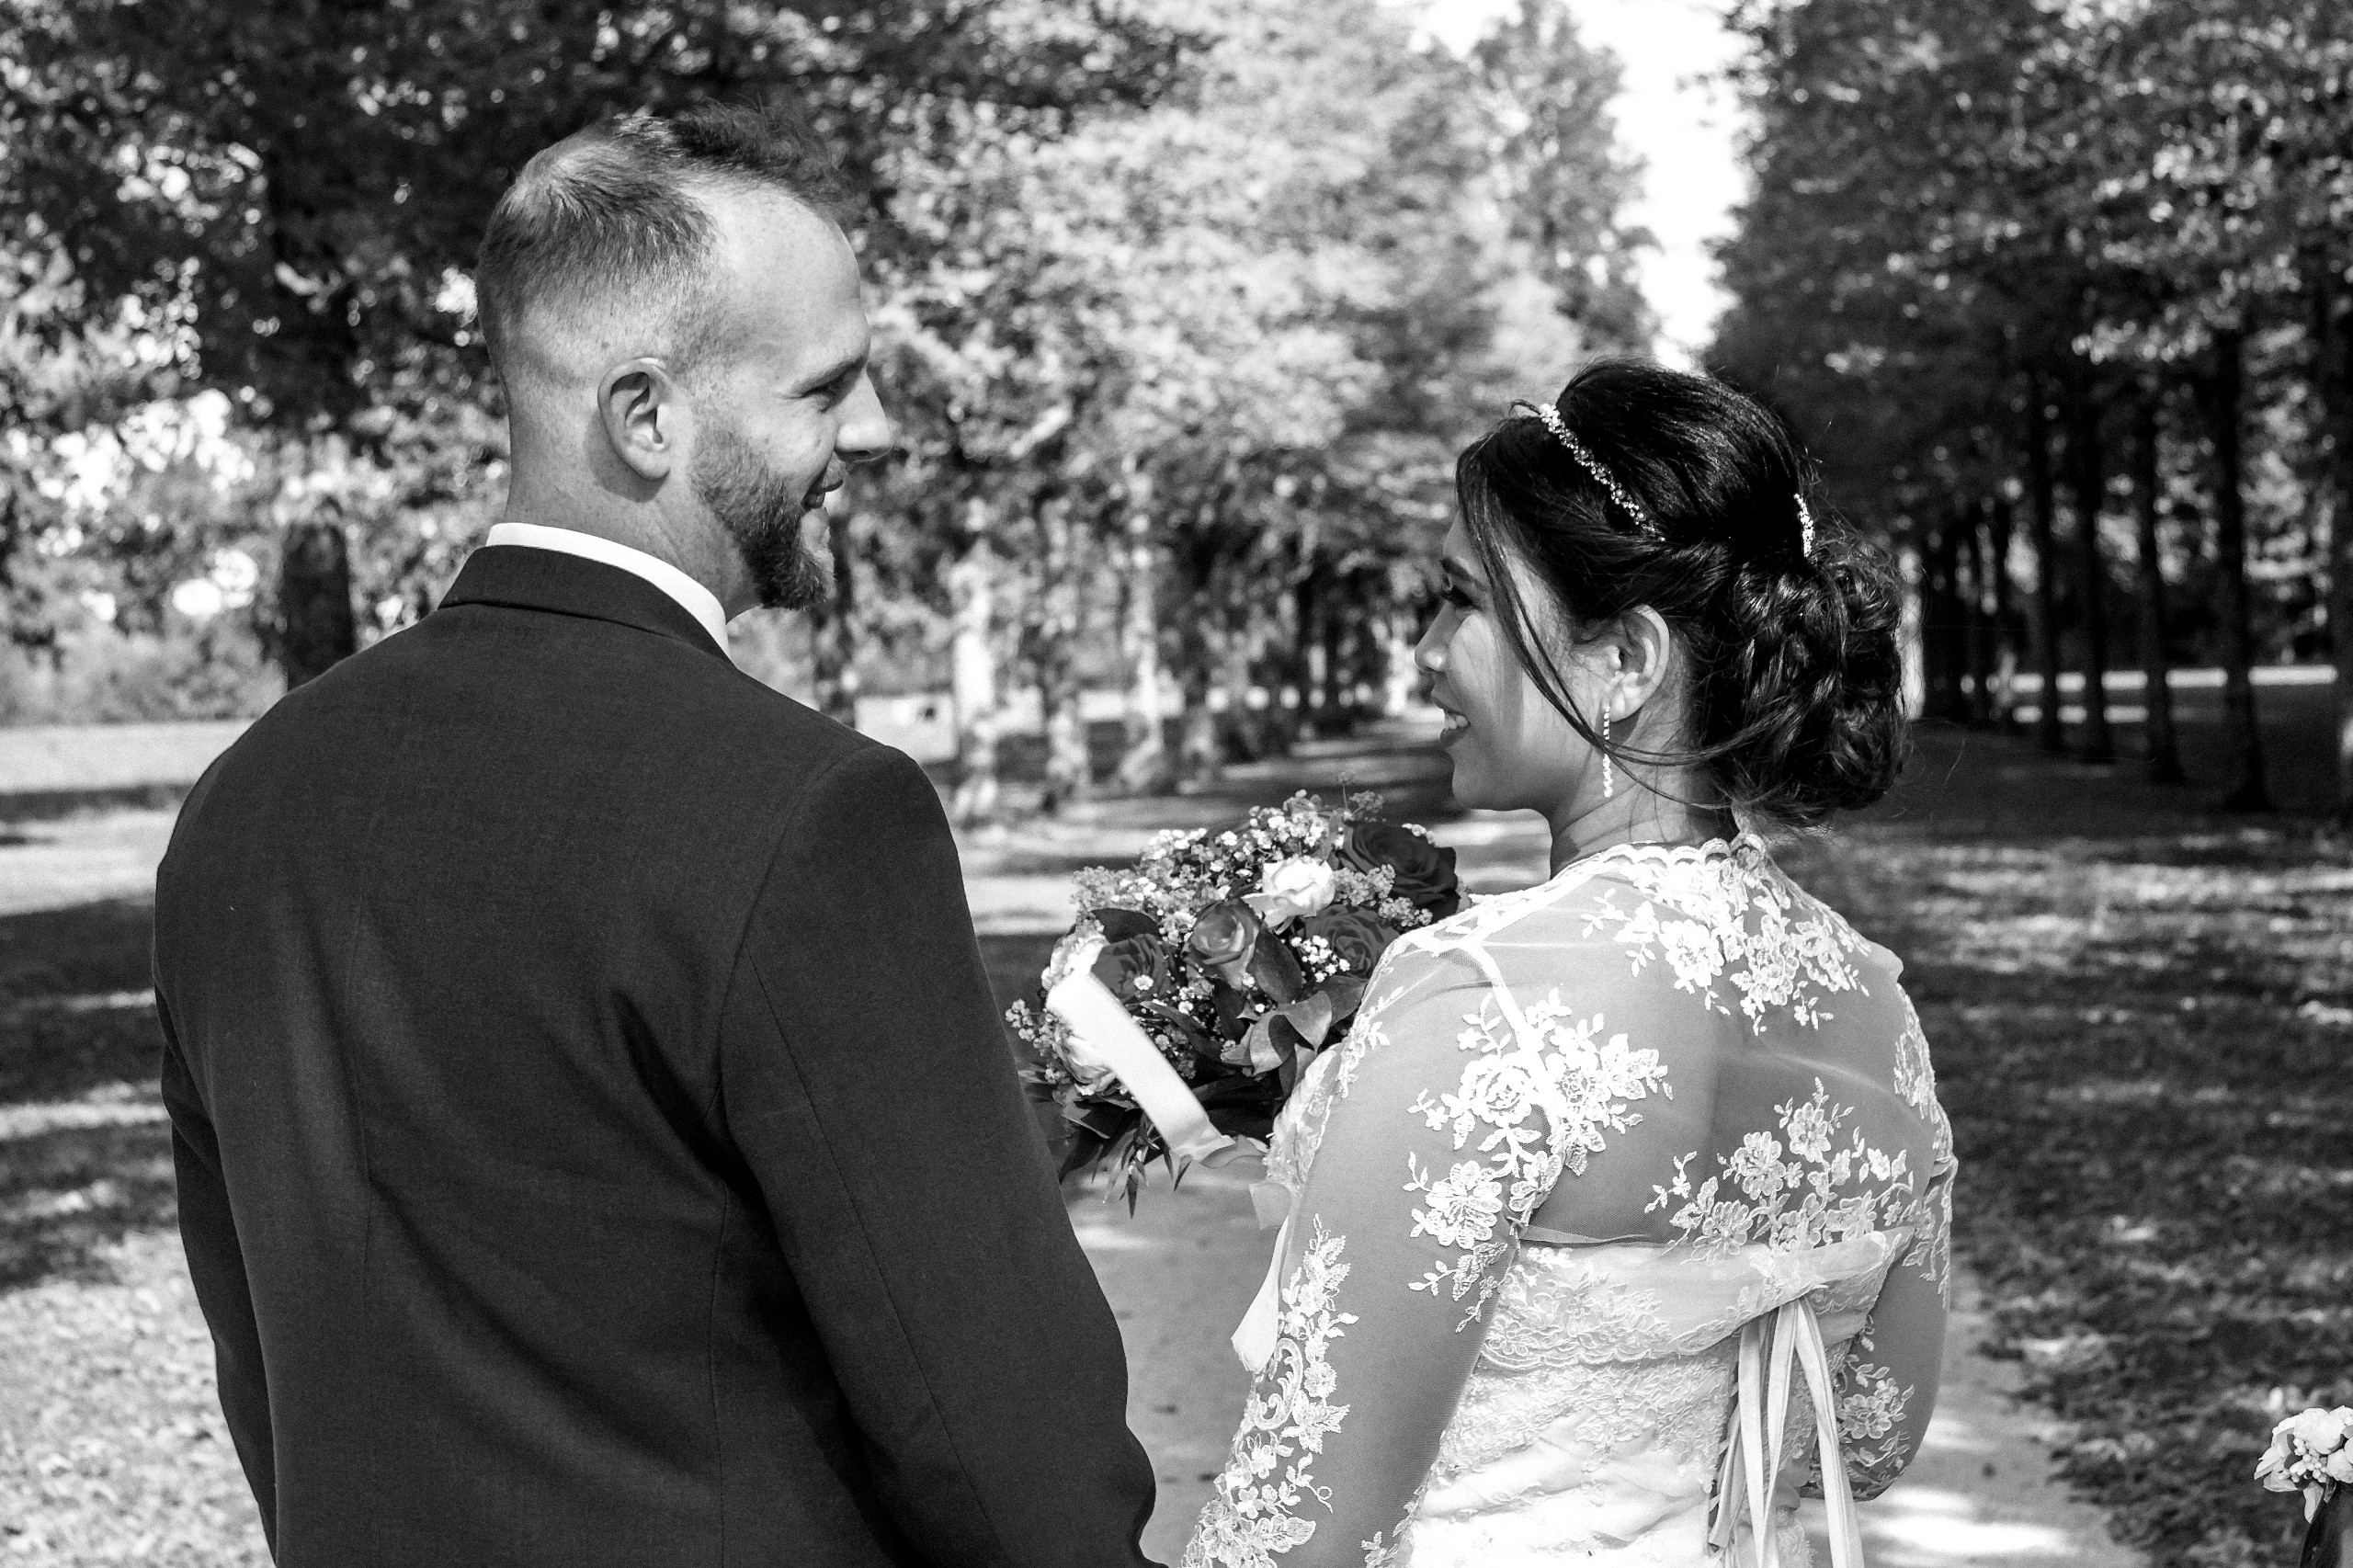 Hochzeitsfotograf im Gro&szlig;raum Bruchsal. Ich schaffe als Fotograf Ihrer Hochzeit emotionale, preiswerte Fotografie, bereits ab 280 &euro;